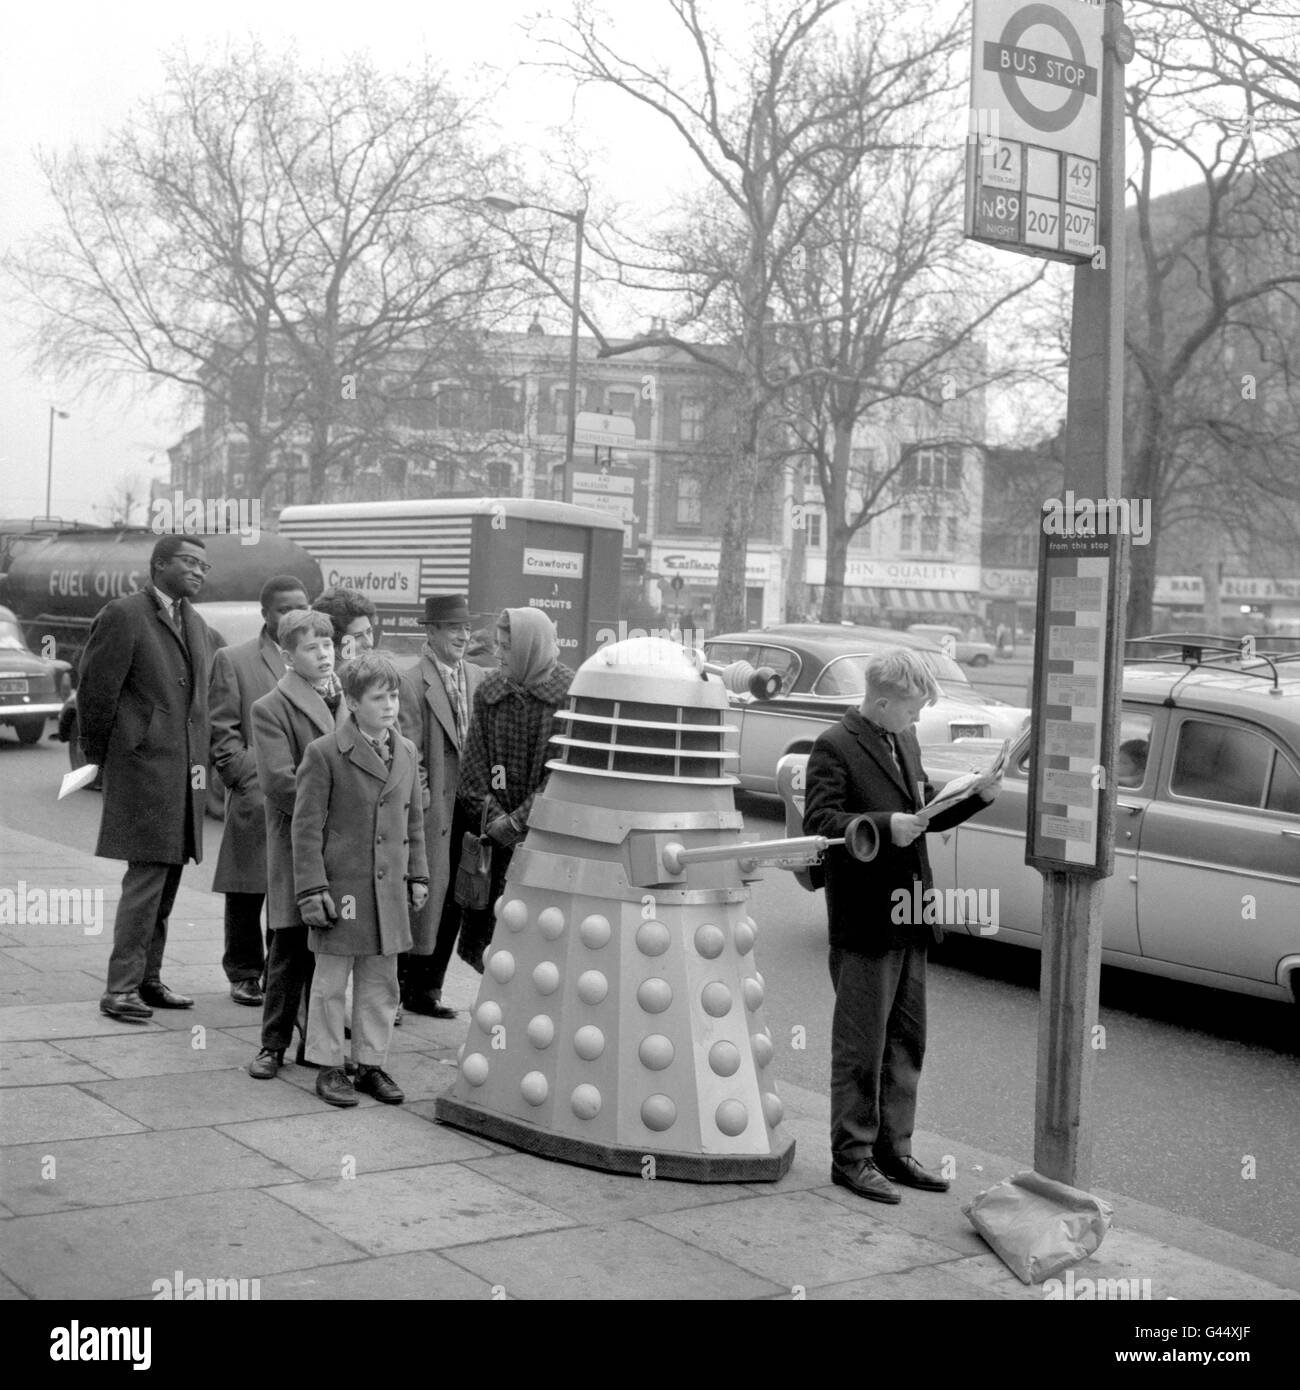 Un jeune passager qui fait la queue lit son journal, ignorant le Dalek, de l'émission télévisée de la BBC « Dr Who », dans la file d'attente derrière lui. Banque D'Images